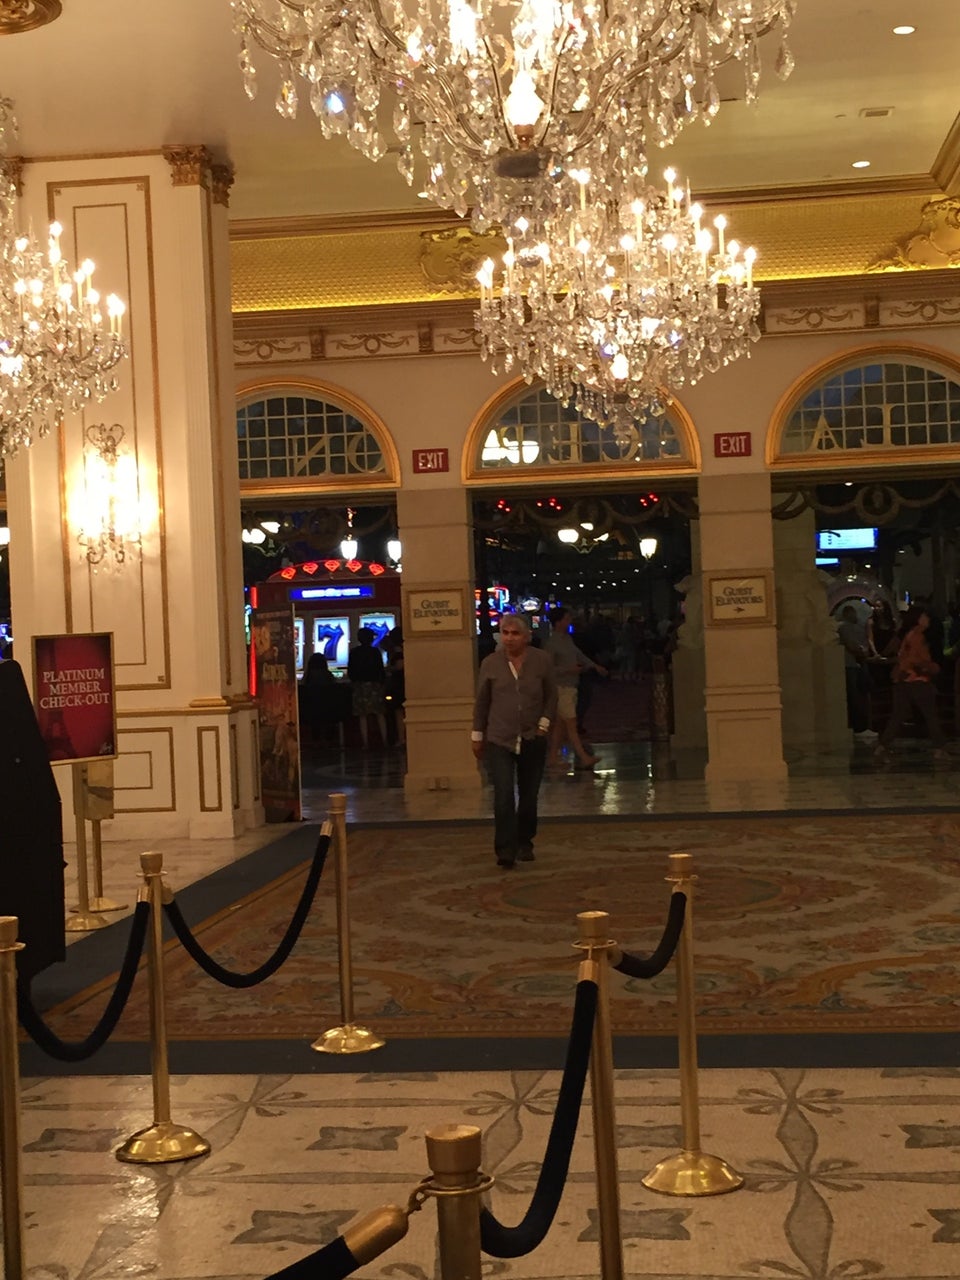 Paris Las Vegas reviews, photos - The Strip - Las Vegas